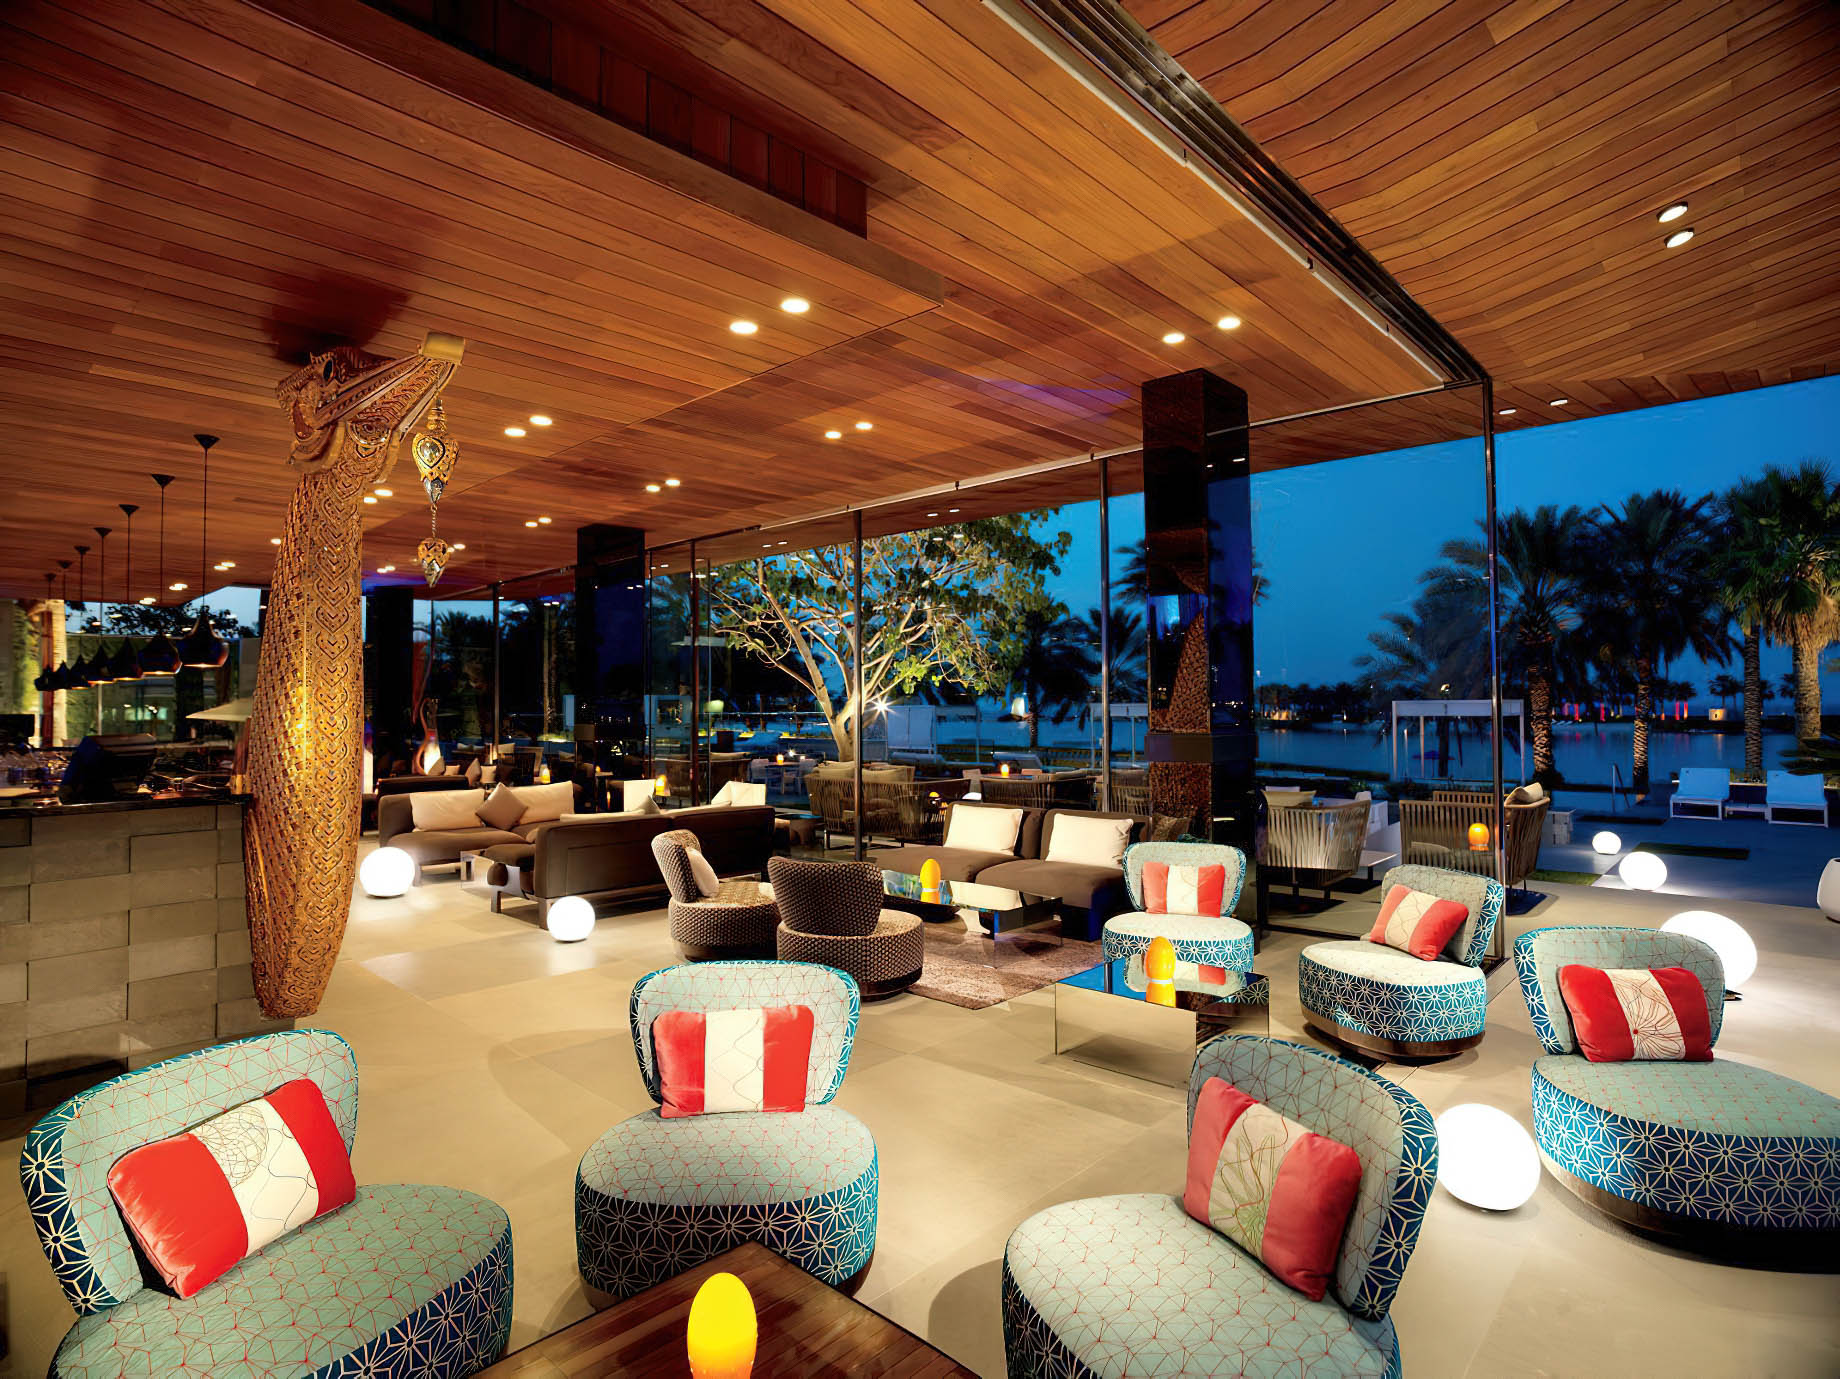 The Ritz-Carlton, Bahrain Resort Hotel - Manama, Bahrain - Thai Lounge Restaurant Seating